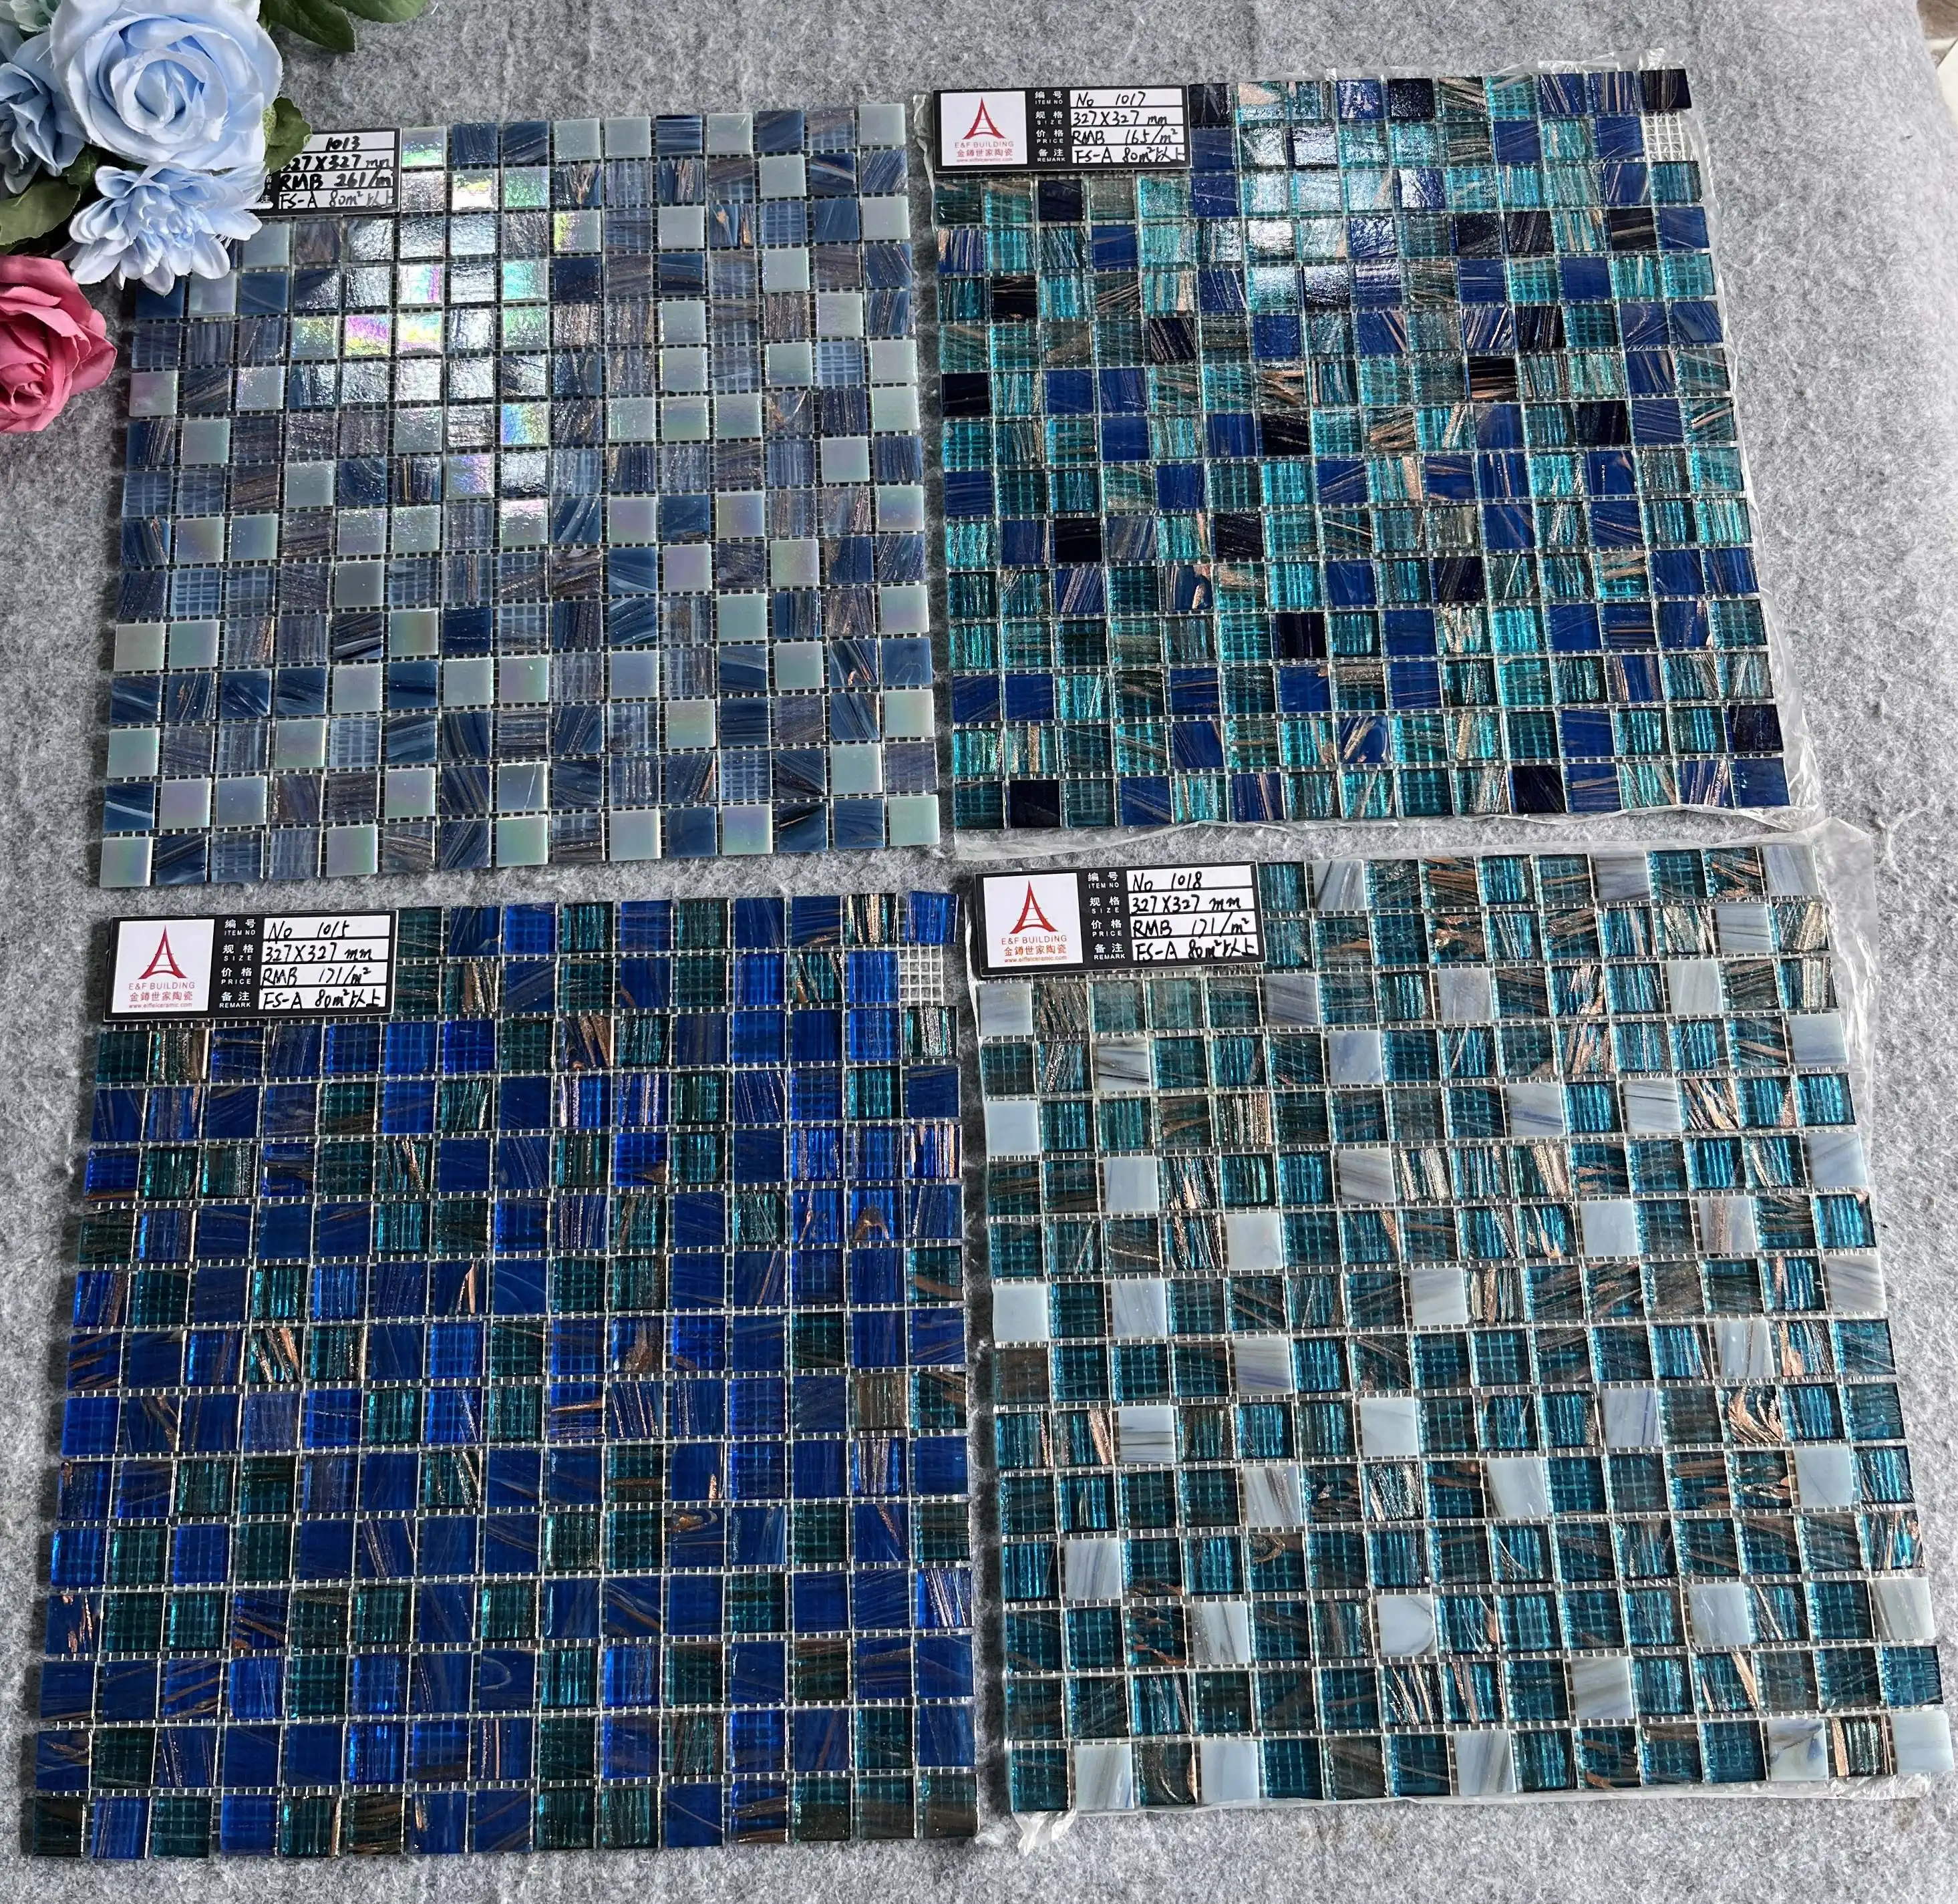 Venta al por mayor OEM ODM piscina línea de flotación azulejos de vidrio de fusión en caliente línea de oro de vidrio iridiscente mosaico contra salpicaduras azulejos mosaico de vidrio